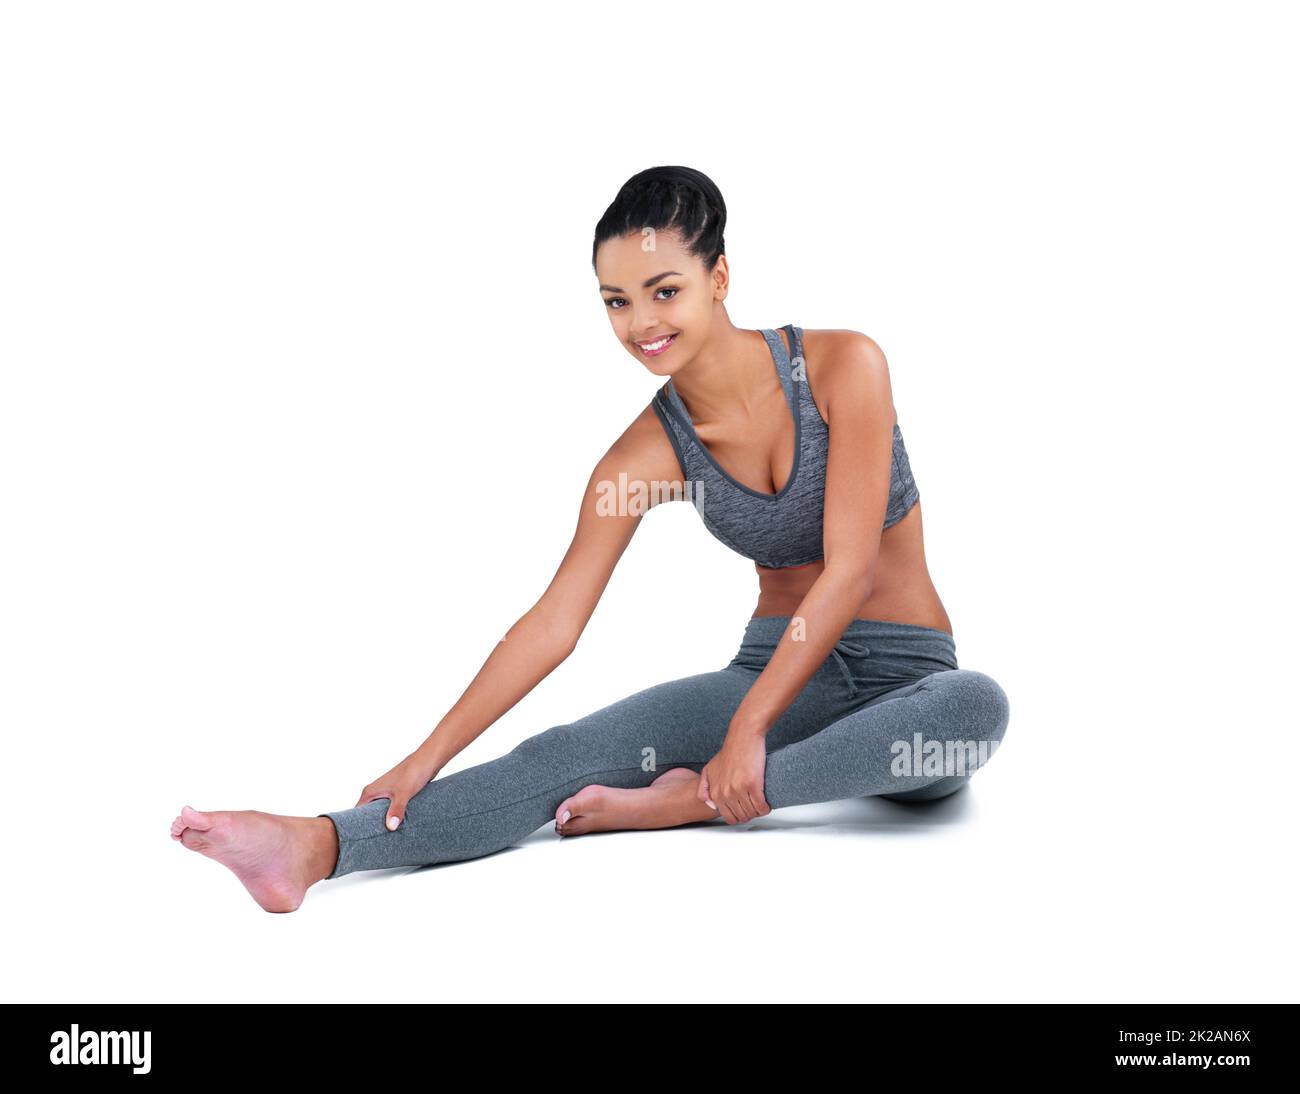 Mi stretch prima di ogni allenamento. Ritratto a tutta lunghezza di un atleta femminile che si estende su uno sfondo bianco. Foto Stock